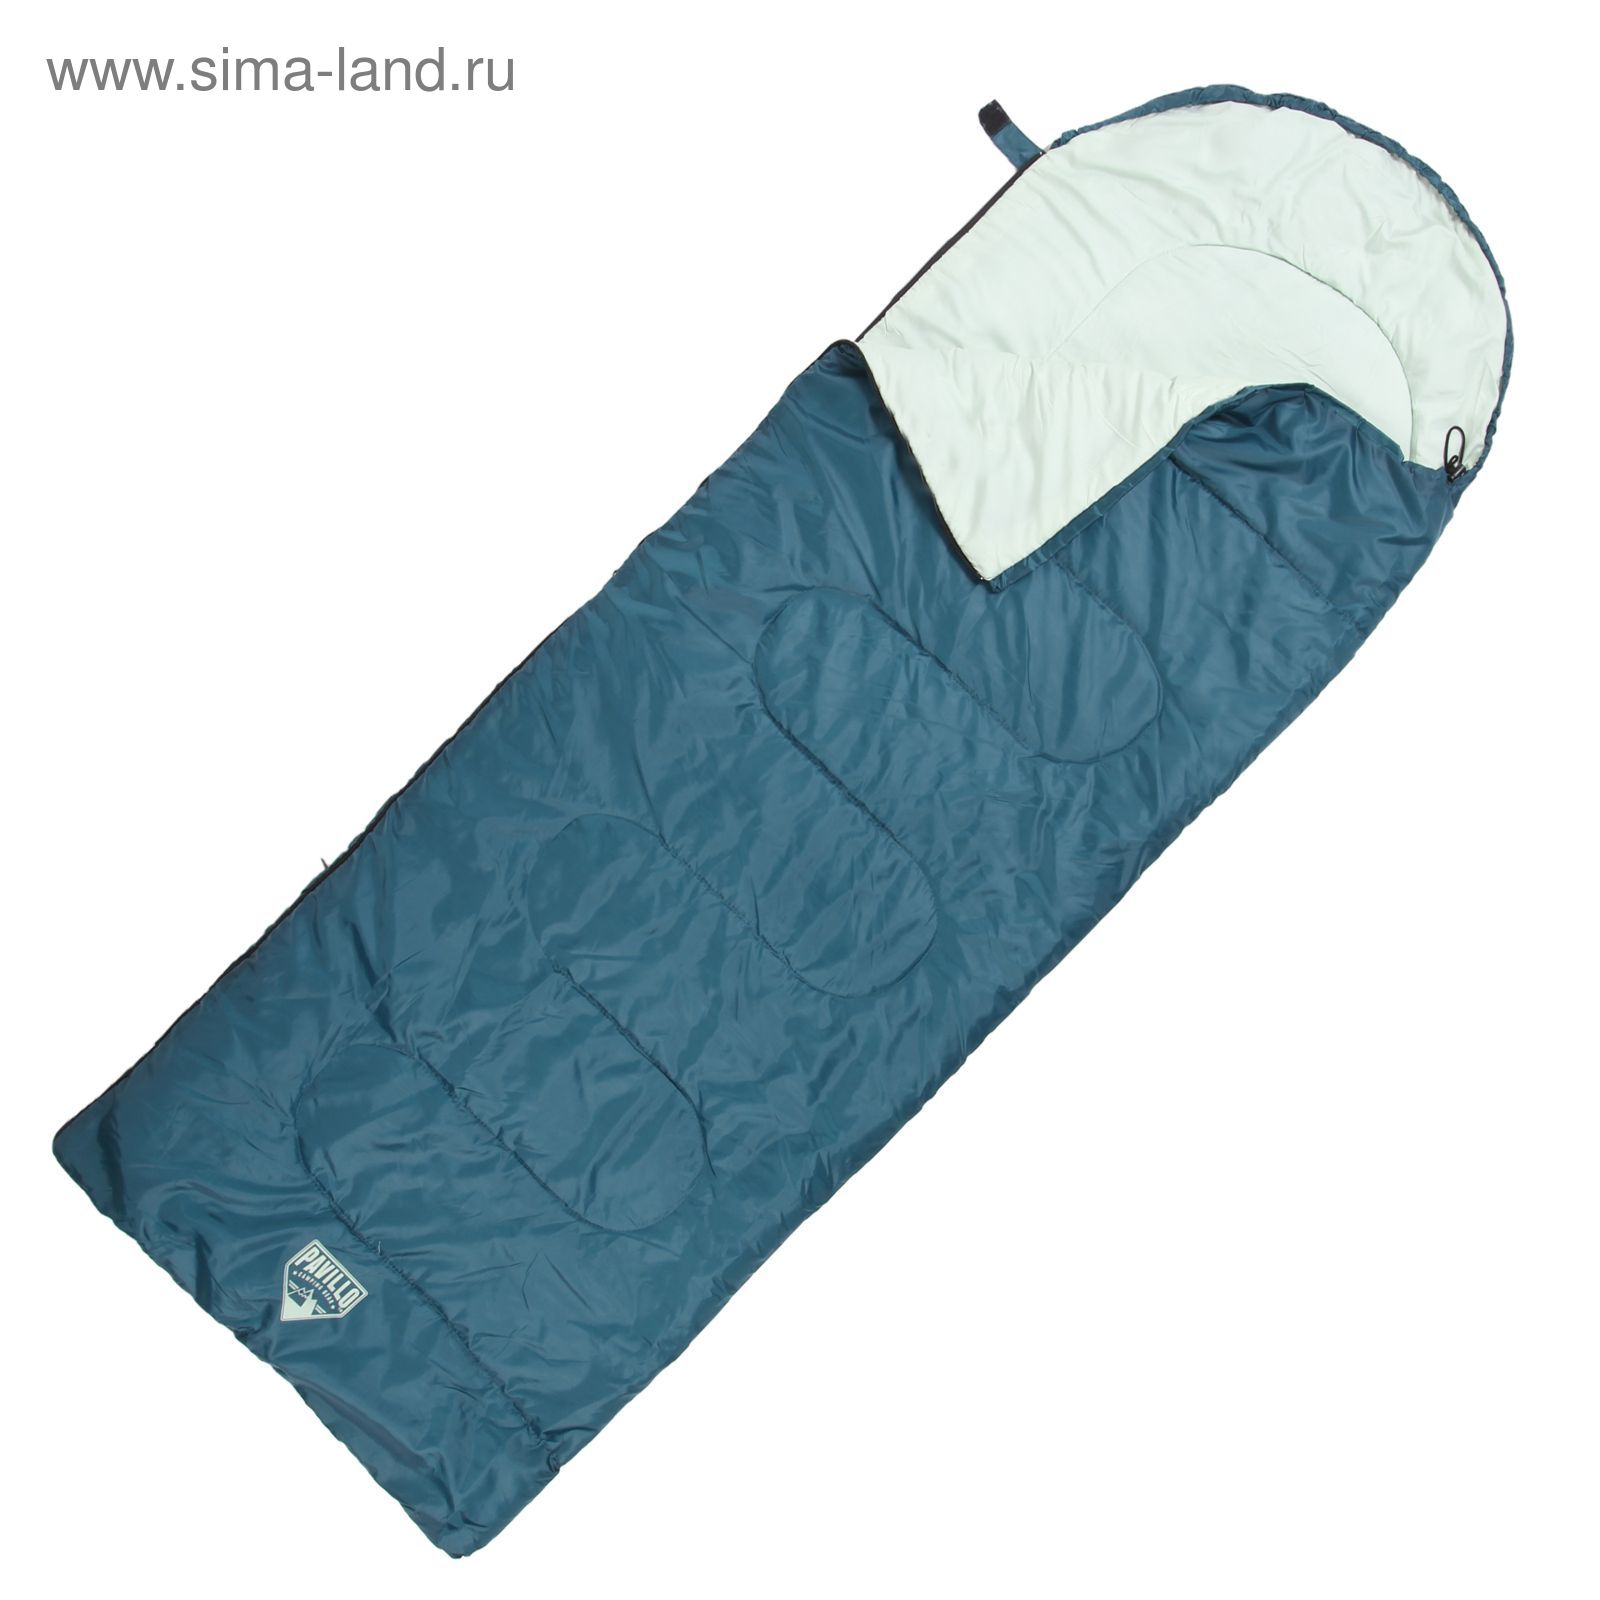 Спальный мешок Escapade 200, 185+35х75 см, от 5°C до 9°C